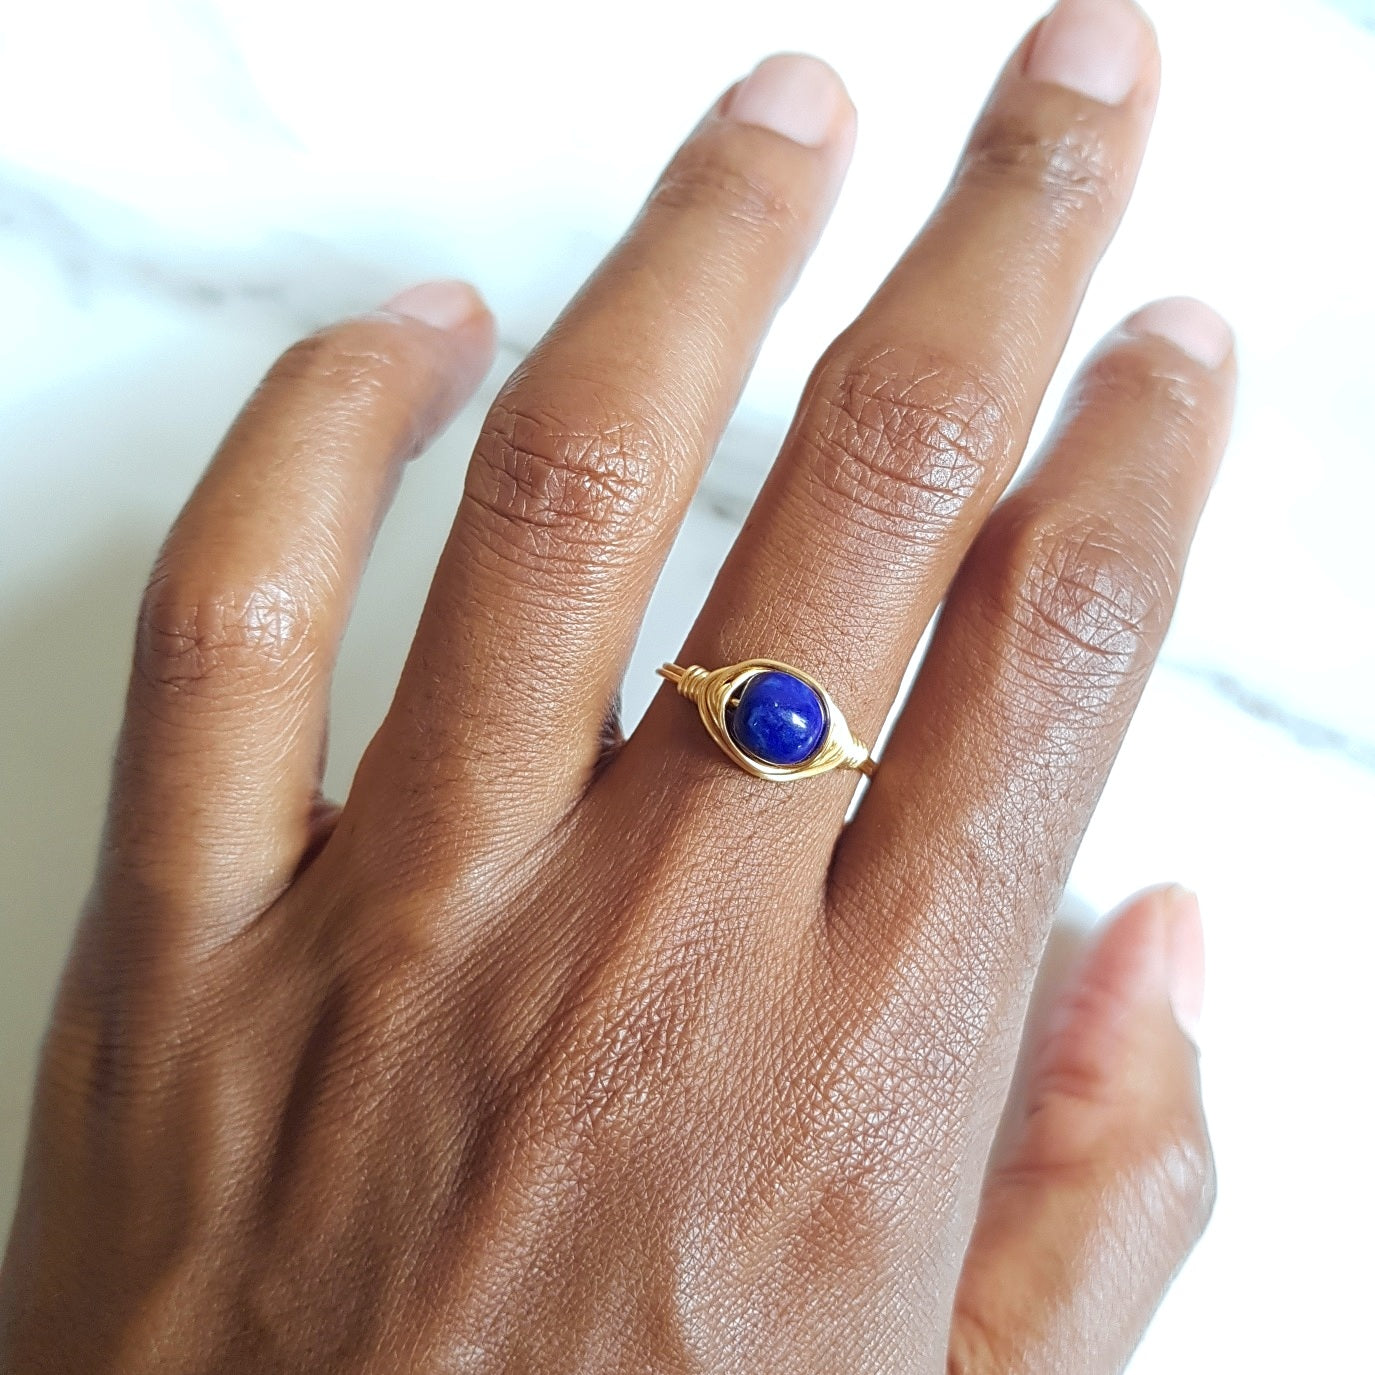 Universe Ring- Lapis lazuli